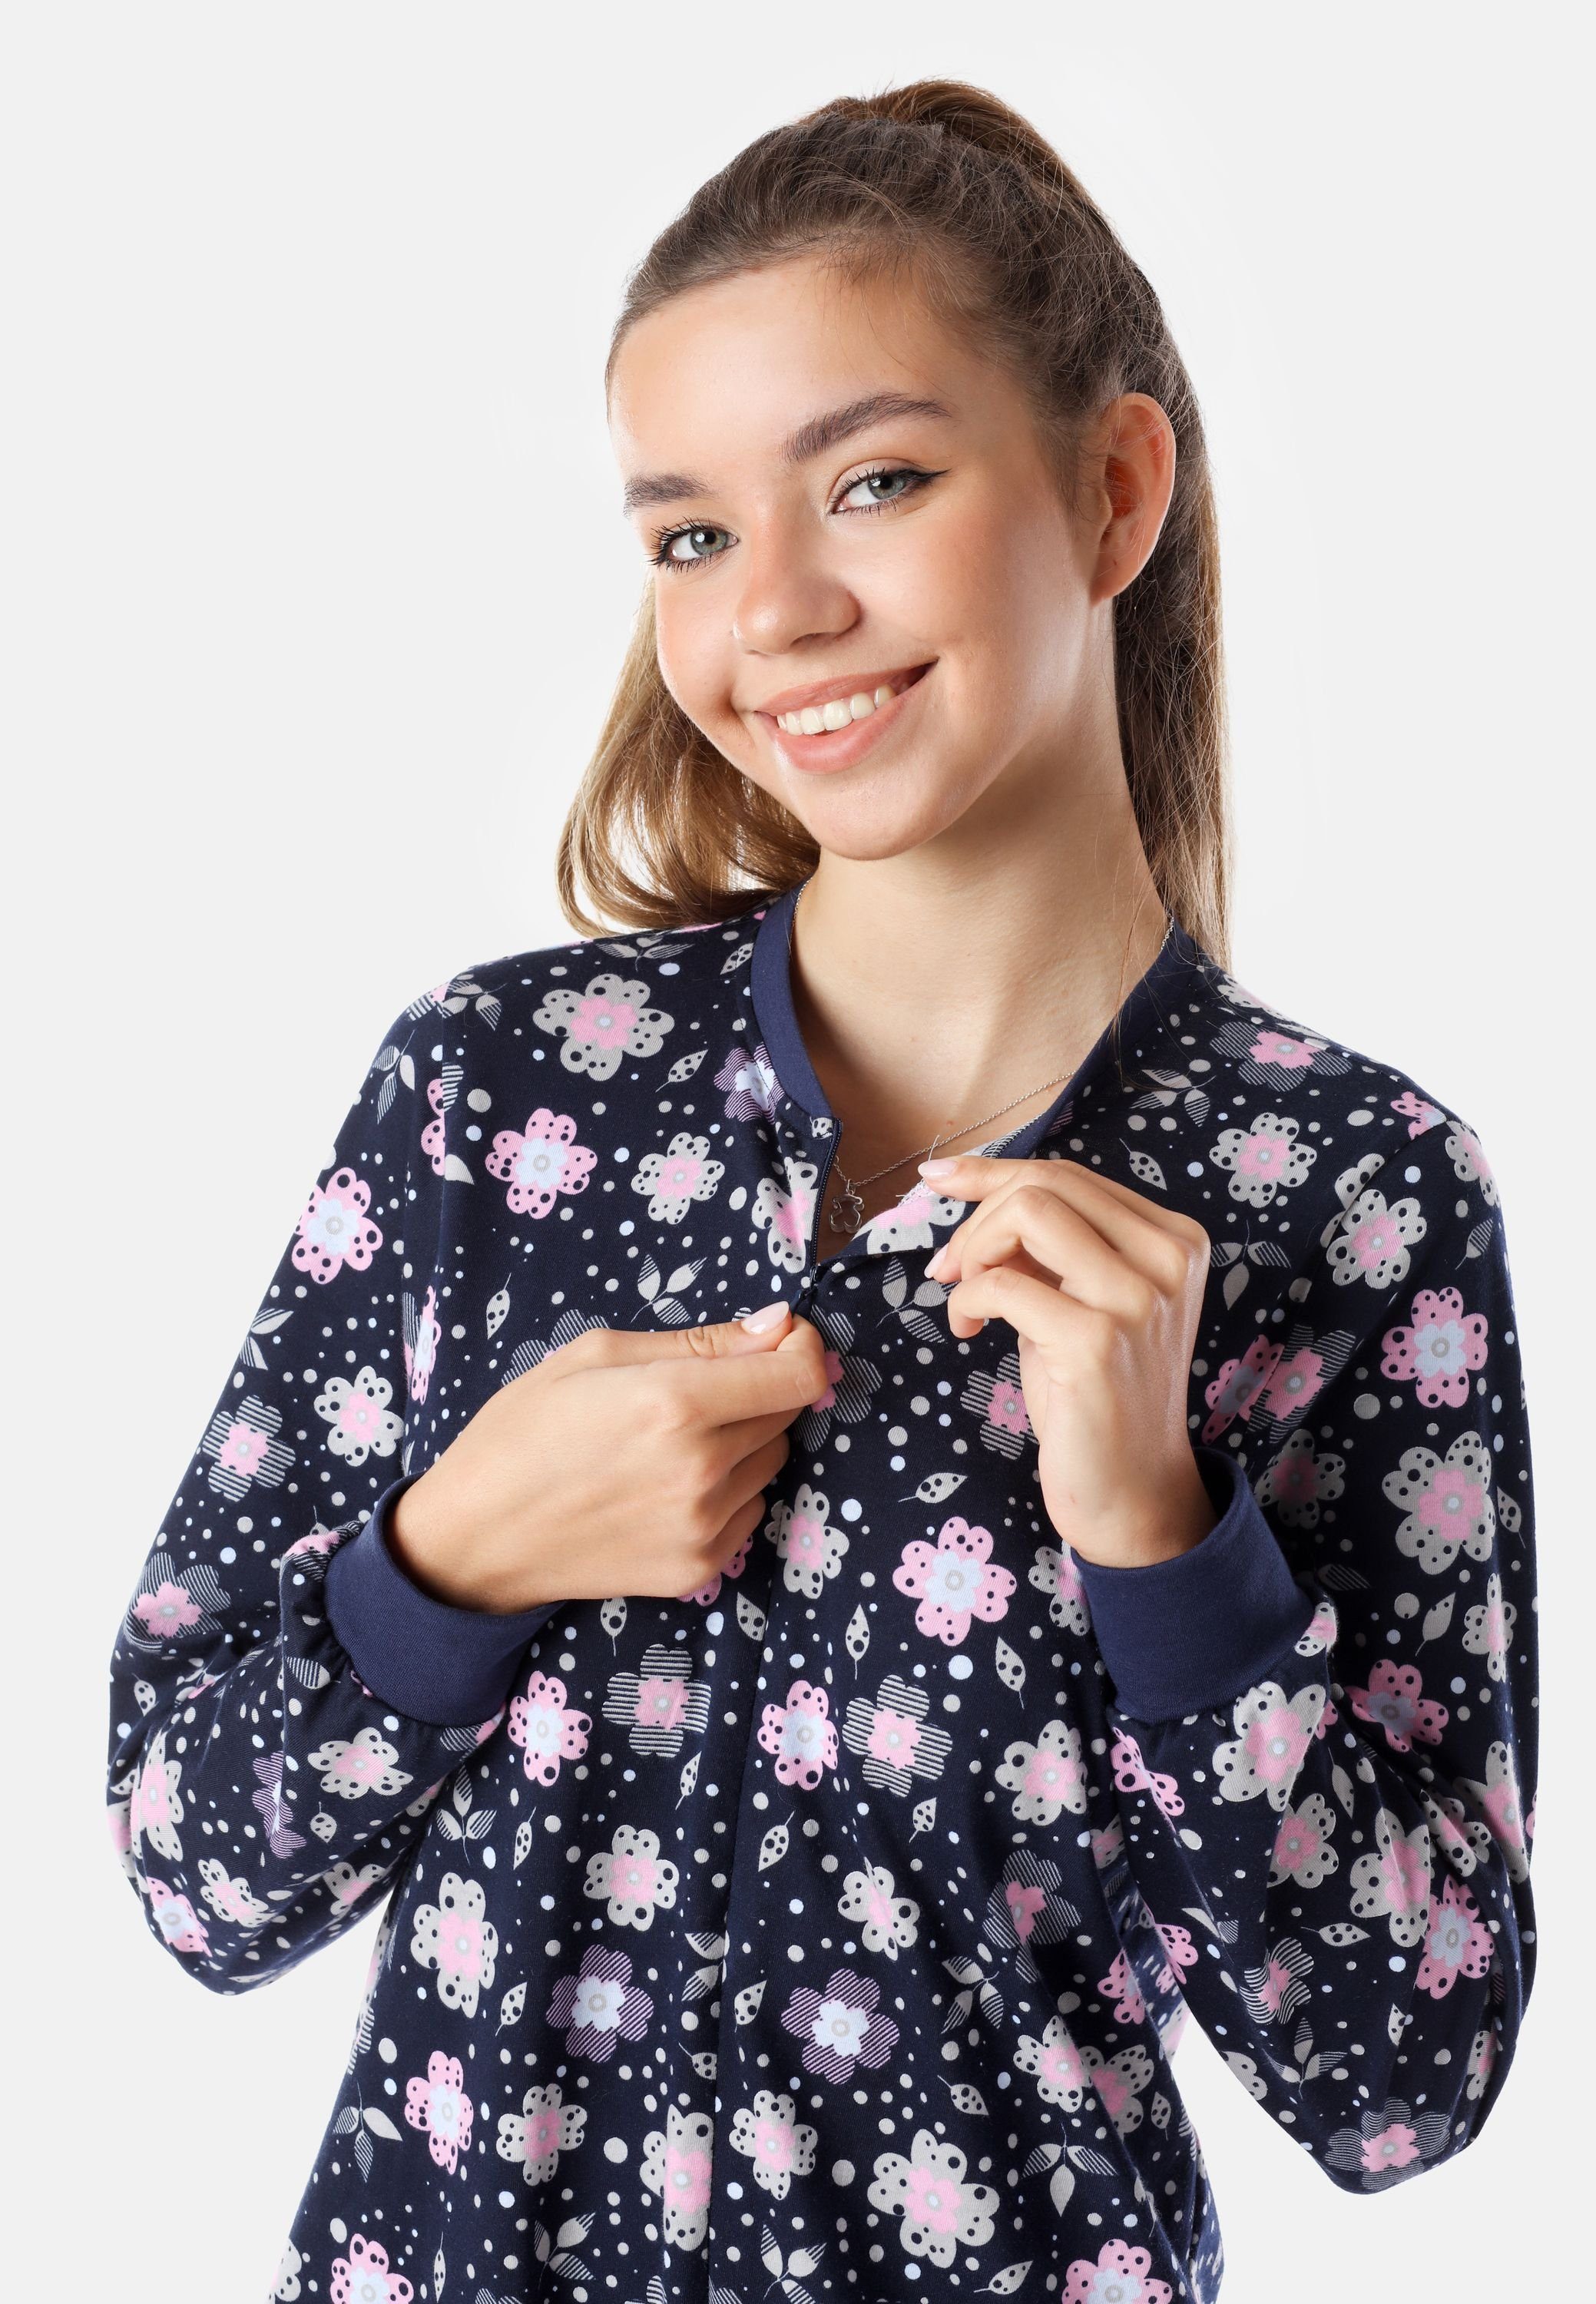 Mädchen Schlafanzug Schlafanzug MS10-235 Style Schlafoverall Jugend Merry Marine/Blumen